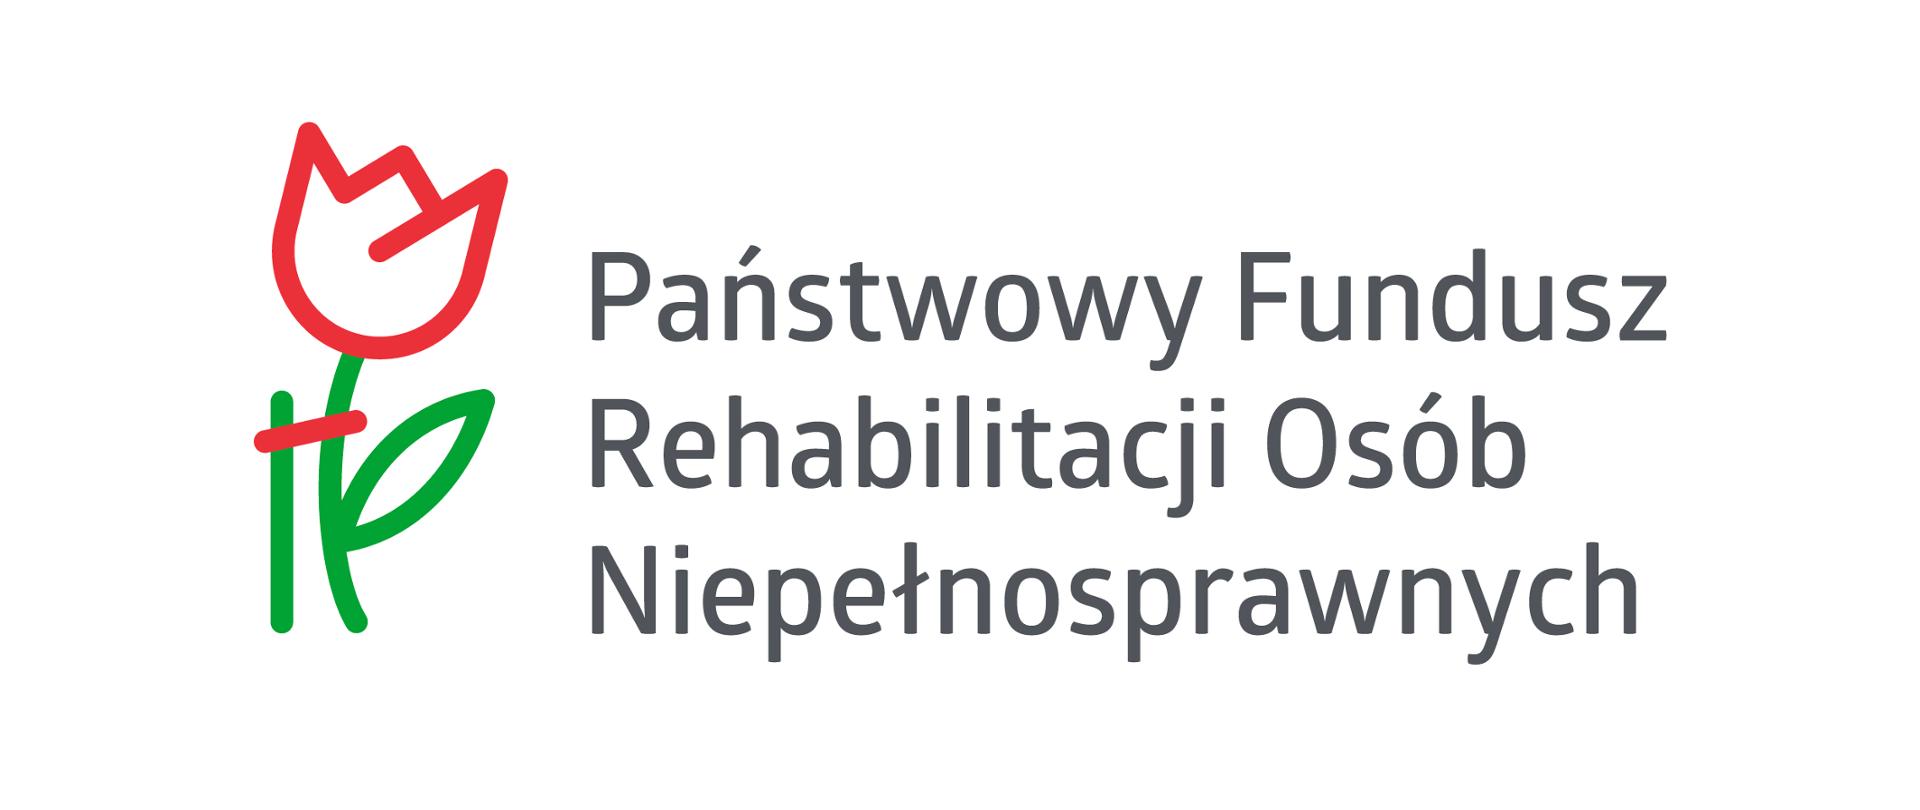 Logo Państwowego Funduszu Rehabilitacji Osób Niepełnosprawnych